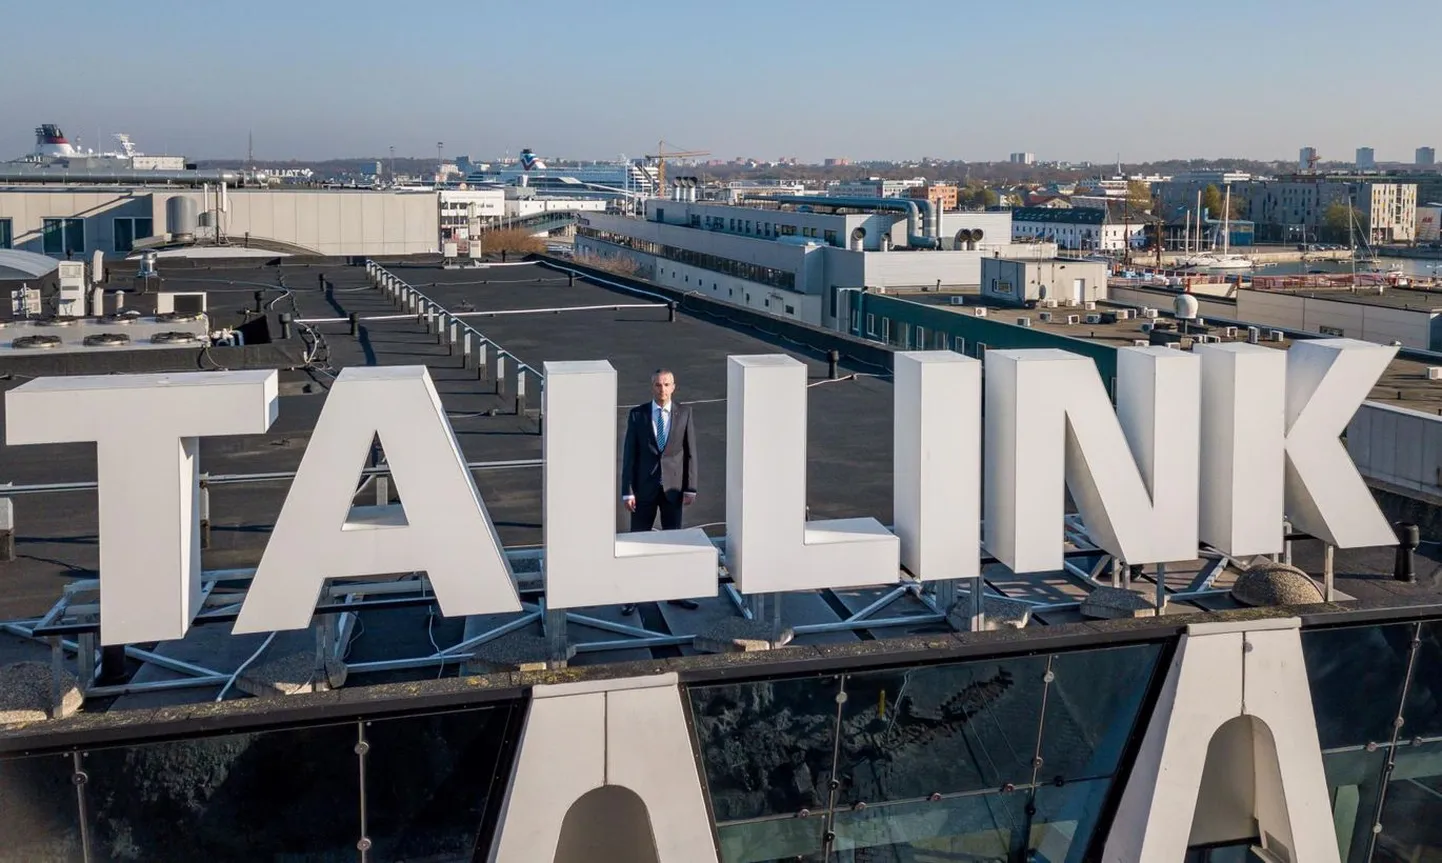 Вчера Tallink сообщил, что временно закрывает три из четырех своих гостиниц. В туристическом секторе снижение оборота местами дошло до 100 процентов.